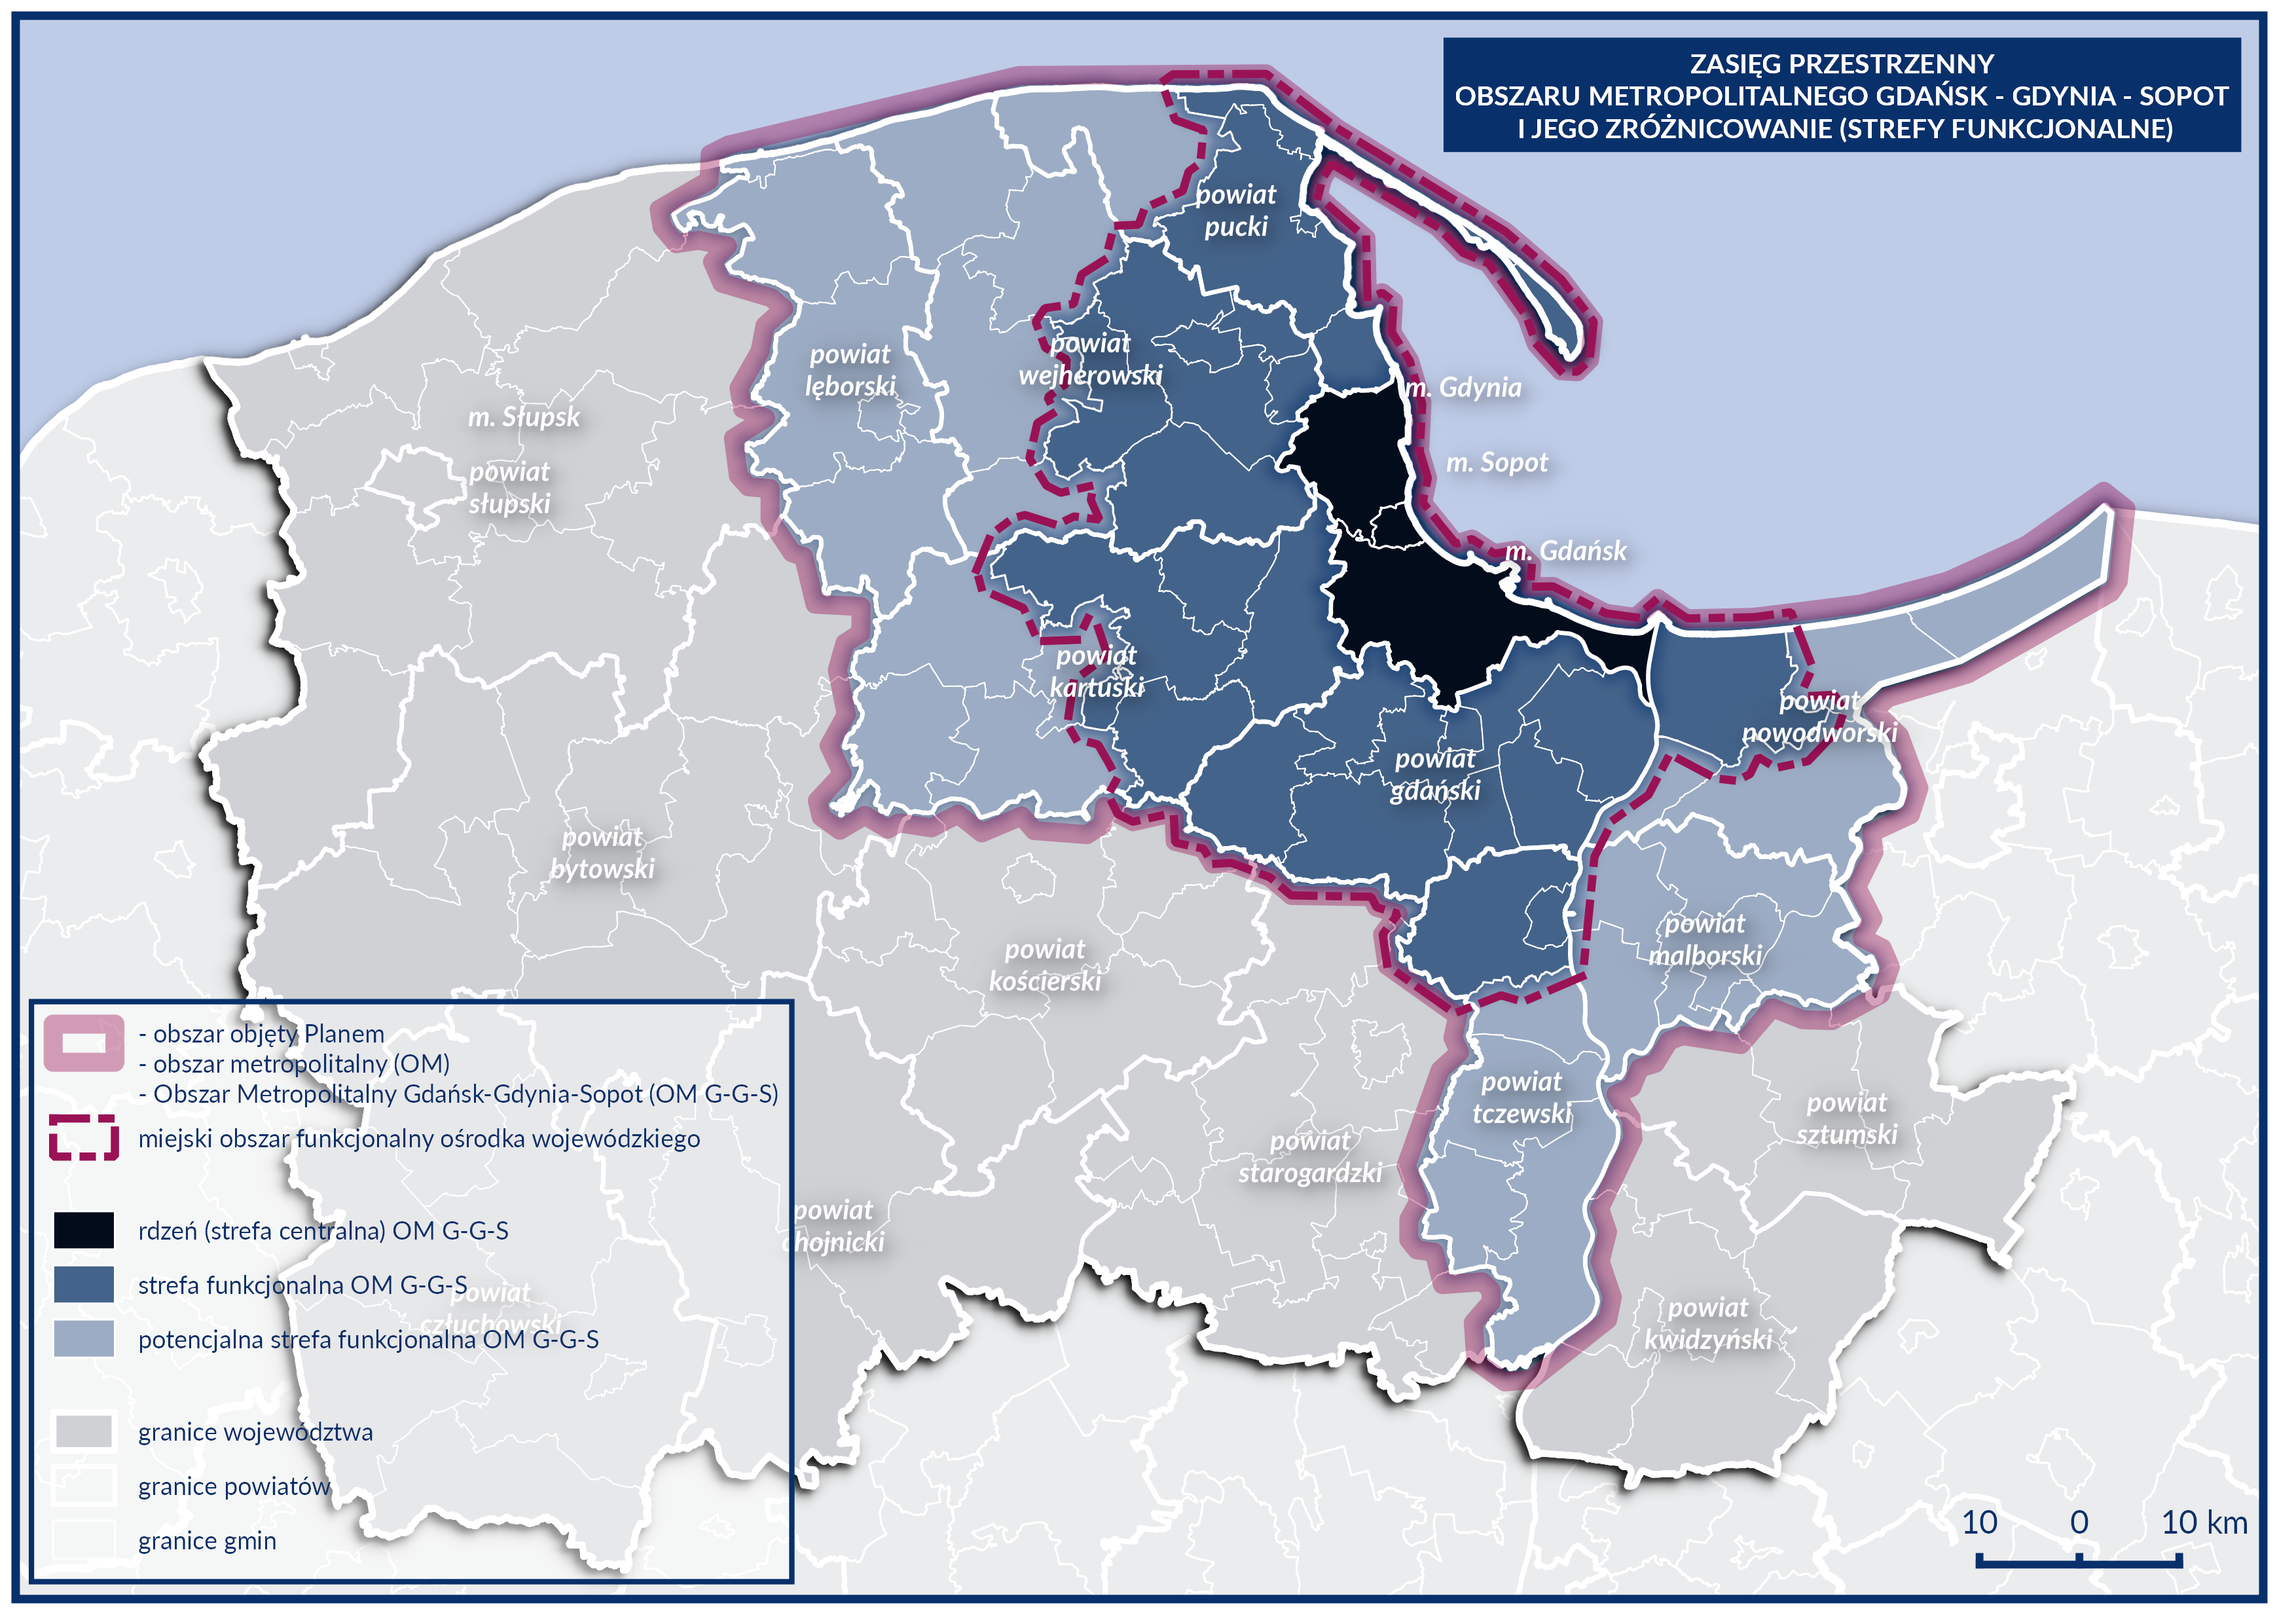 Plan zagospodarowania przestrzennego obszaru metropolitalnego Gdańsk-Gdynia-Sopot 2030